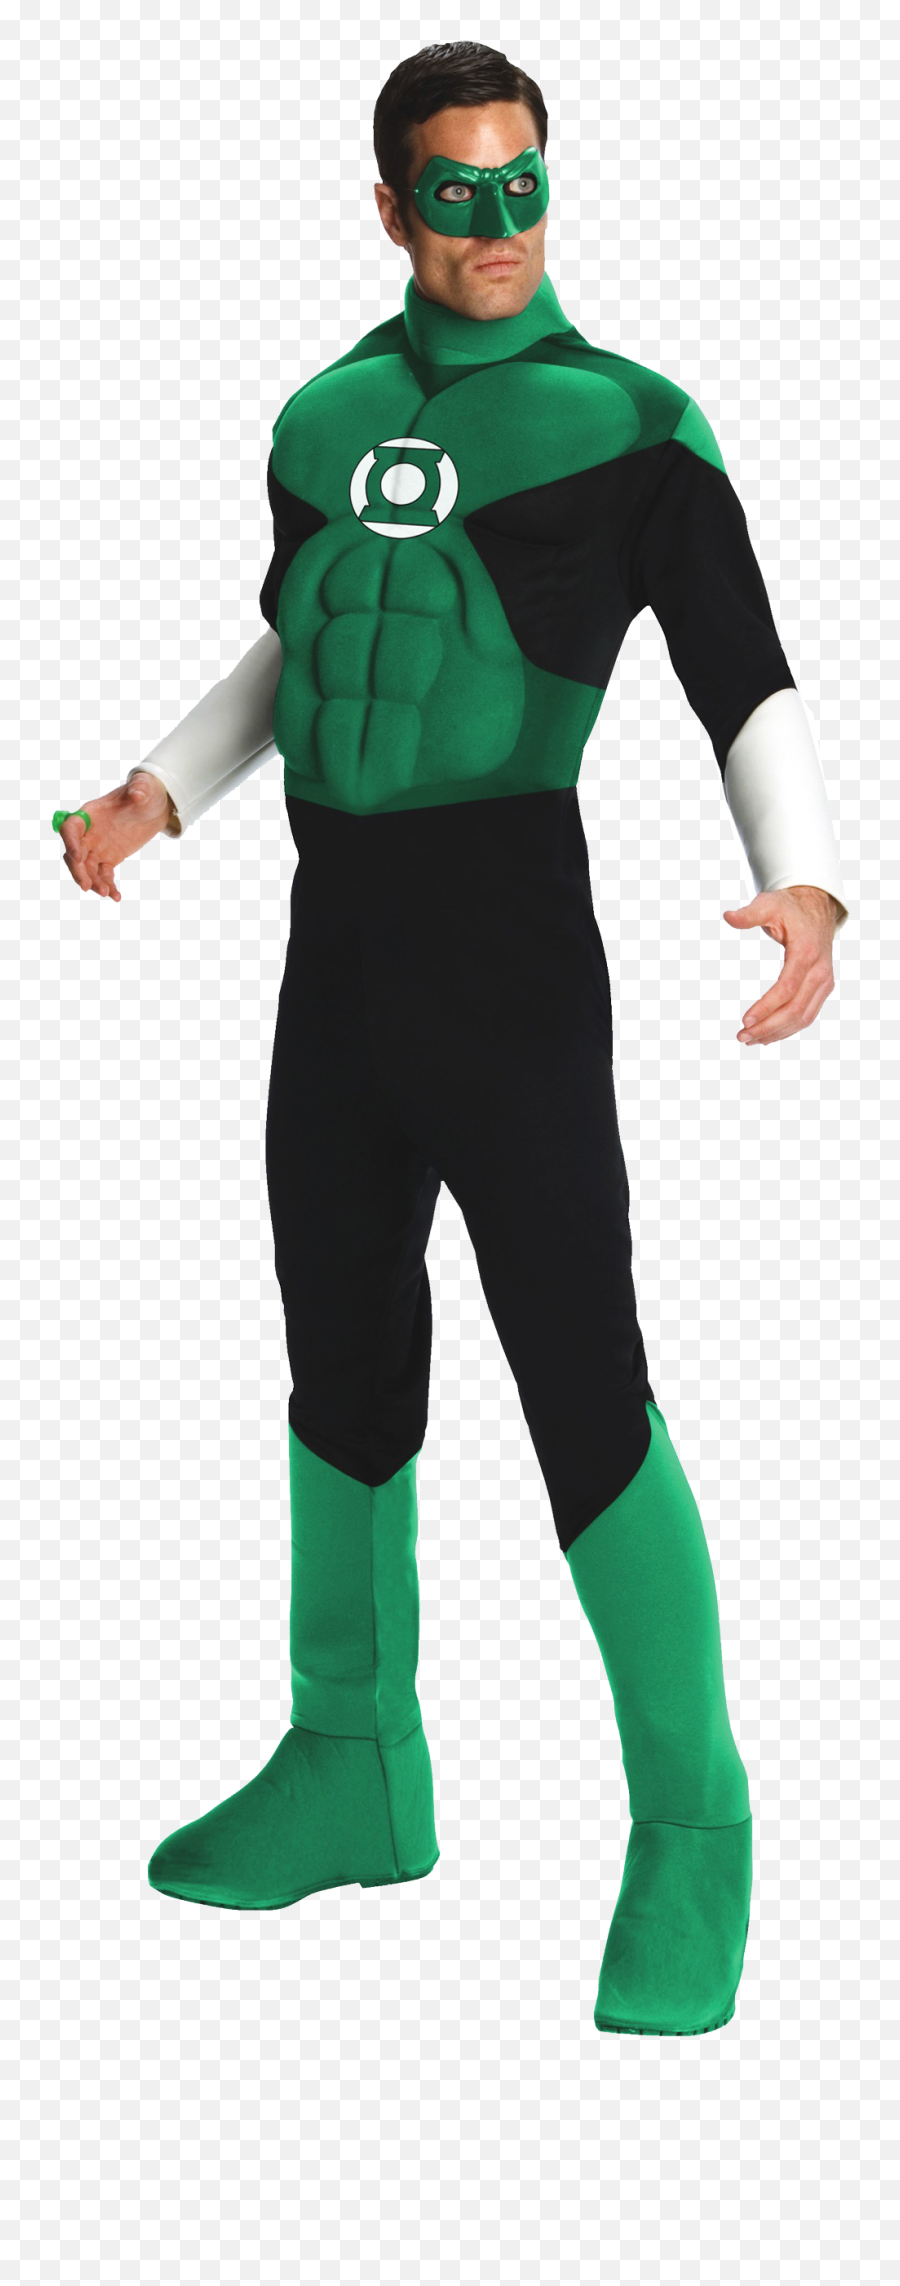 Costume Green Lantern Png Image - Green Lantern Costume,Green Lantern Png